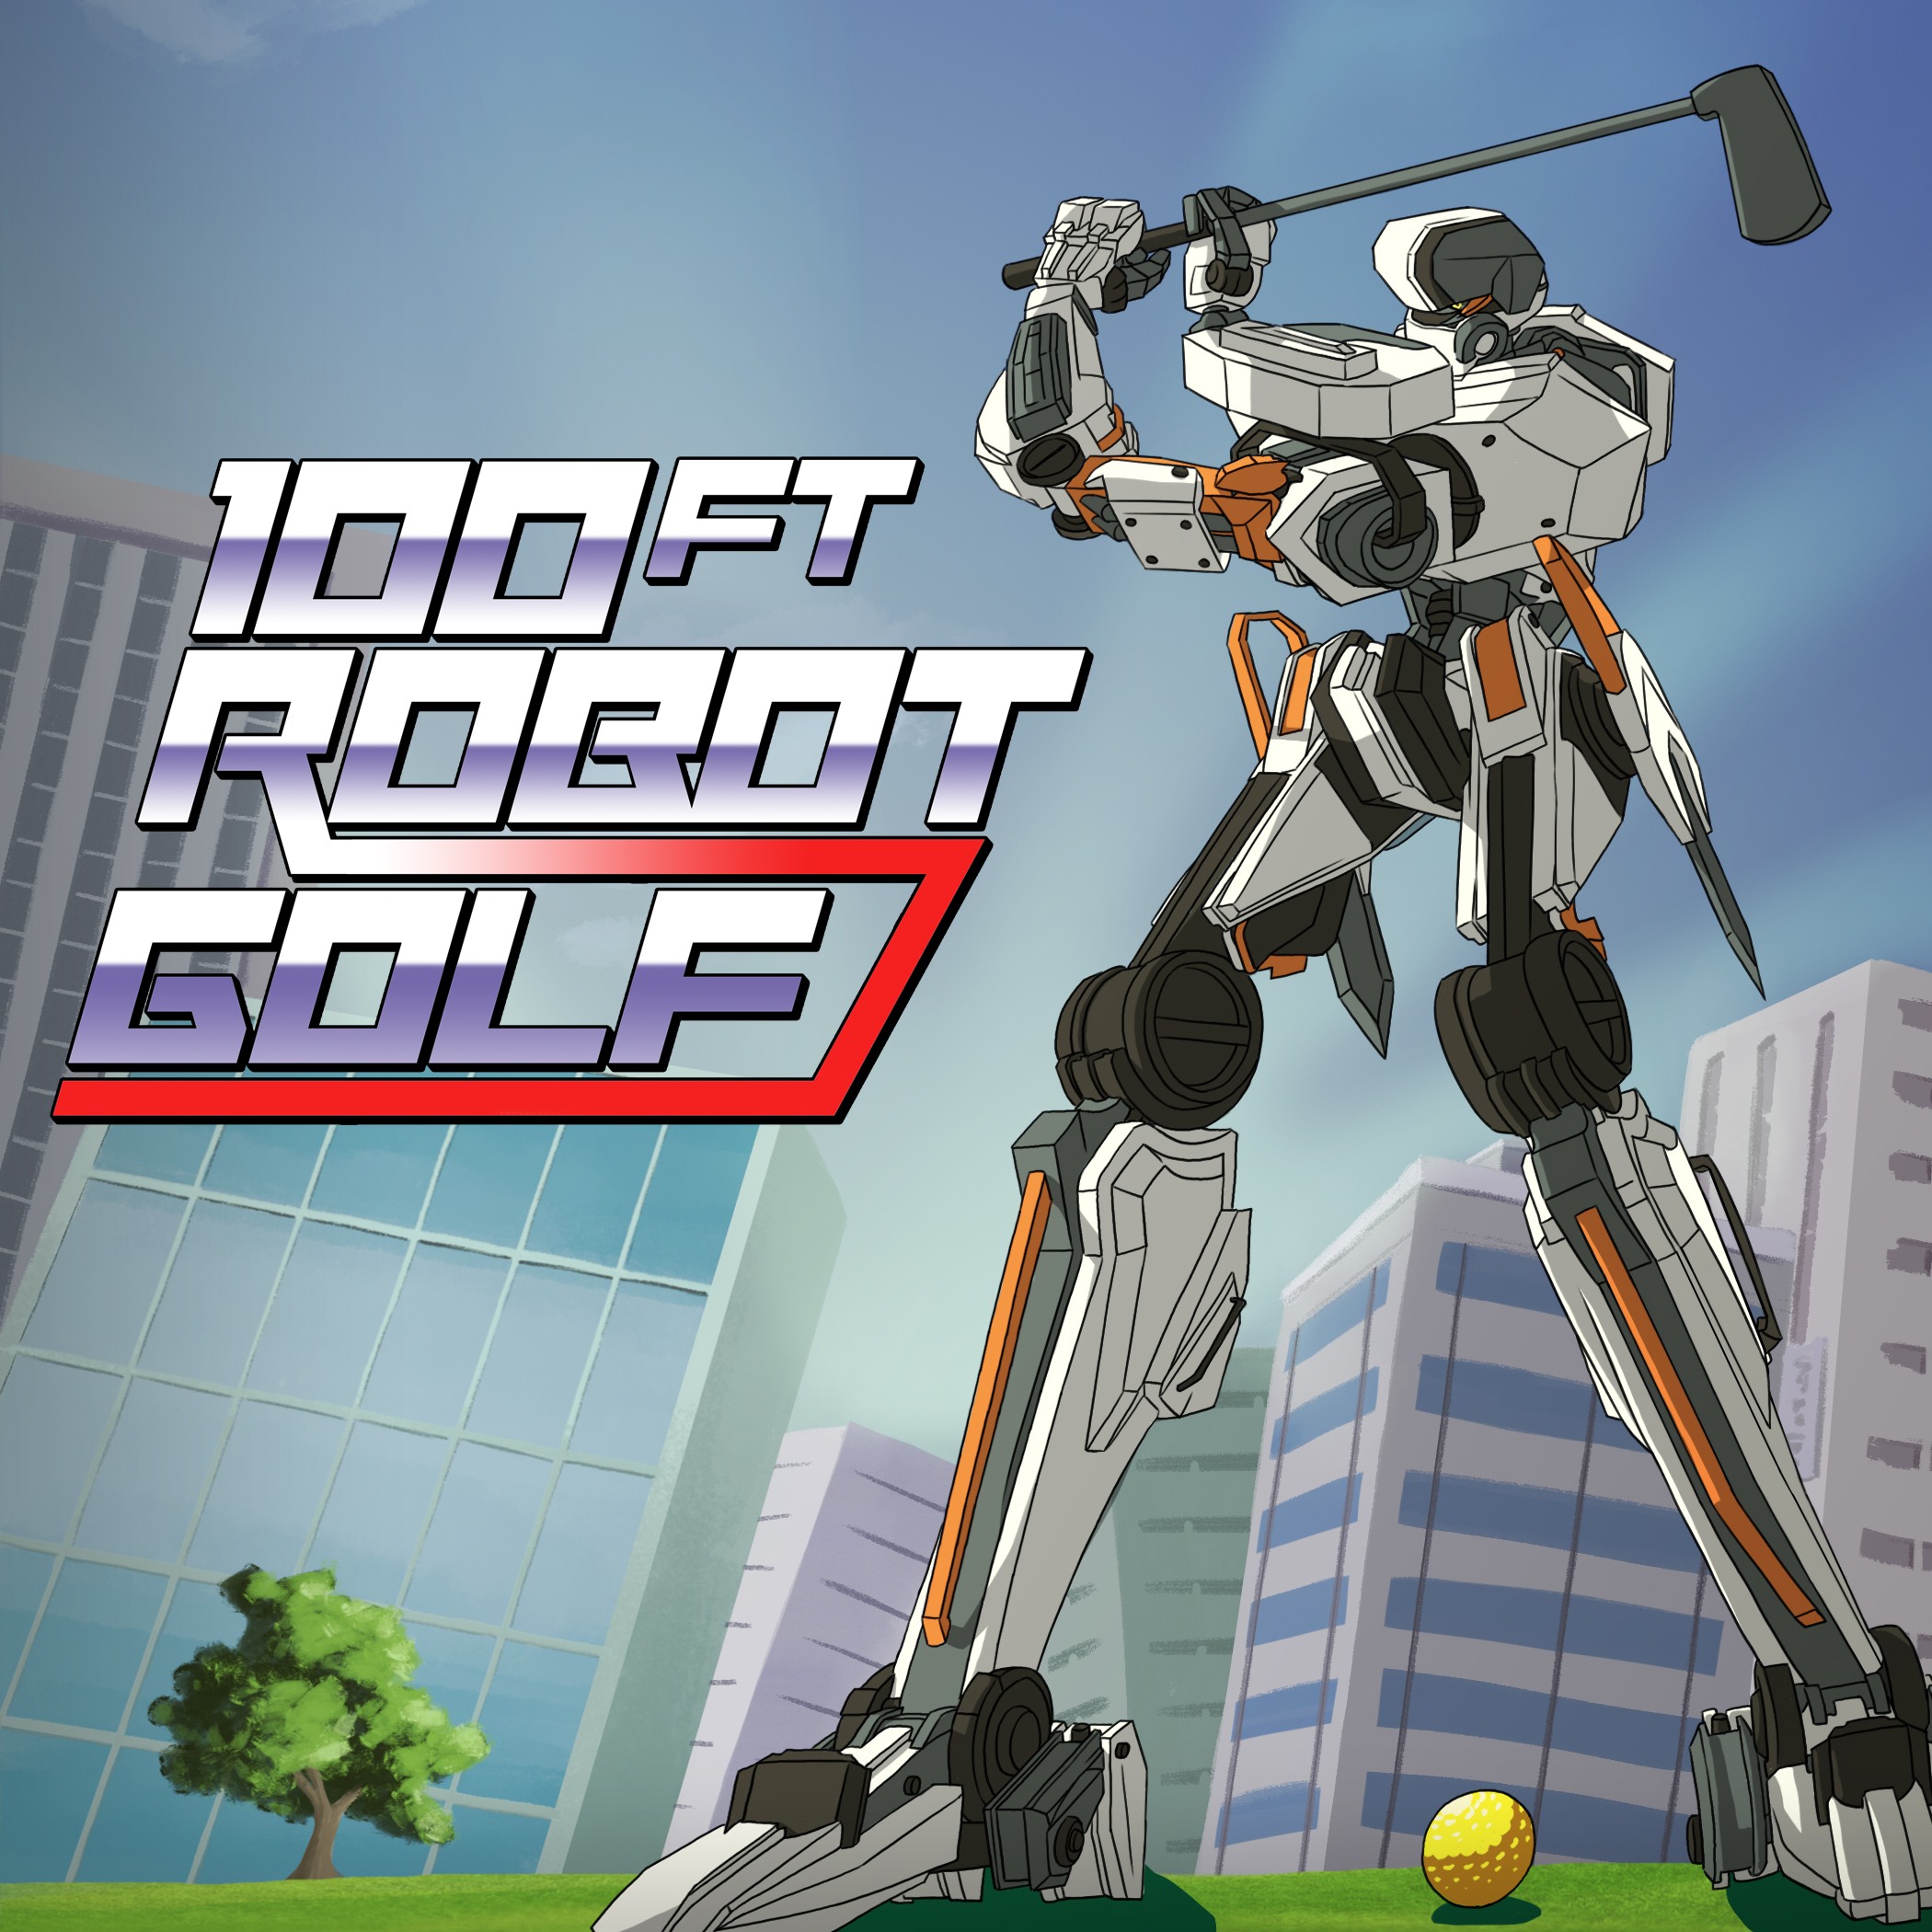 100ft Robot Golf/>
        <br/>
        <p itemprop=